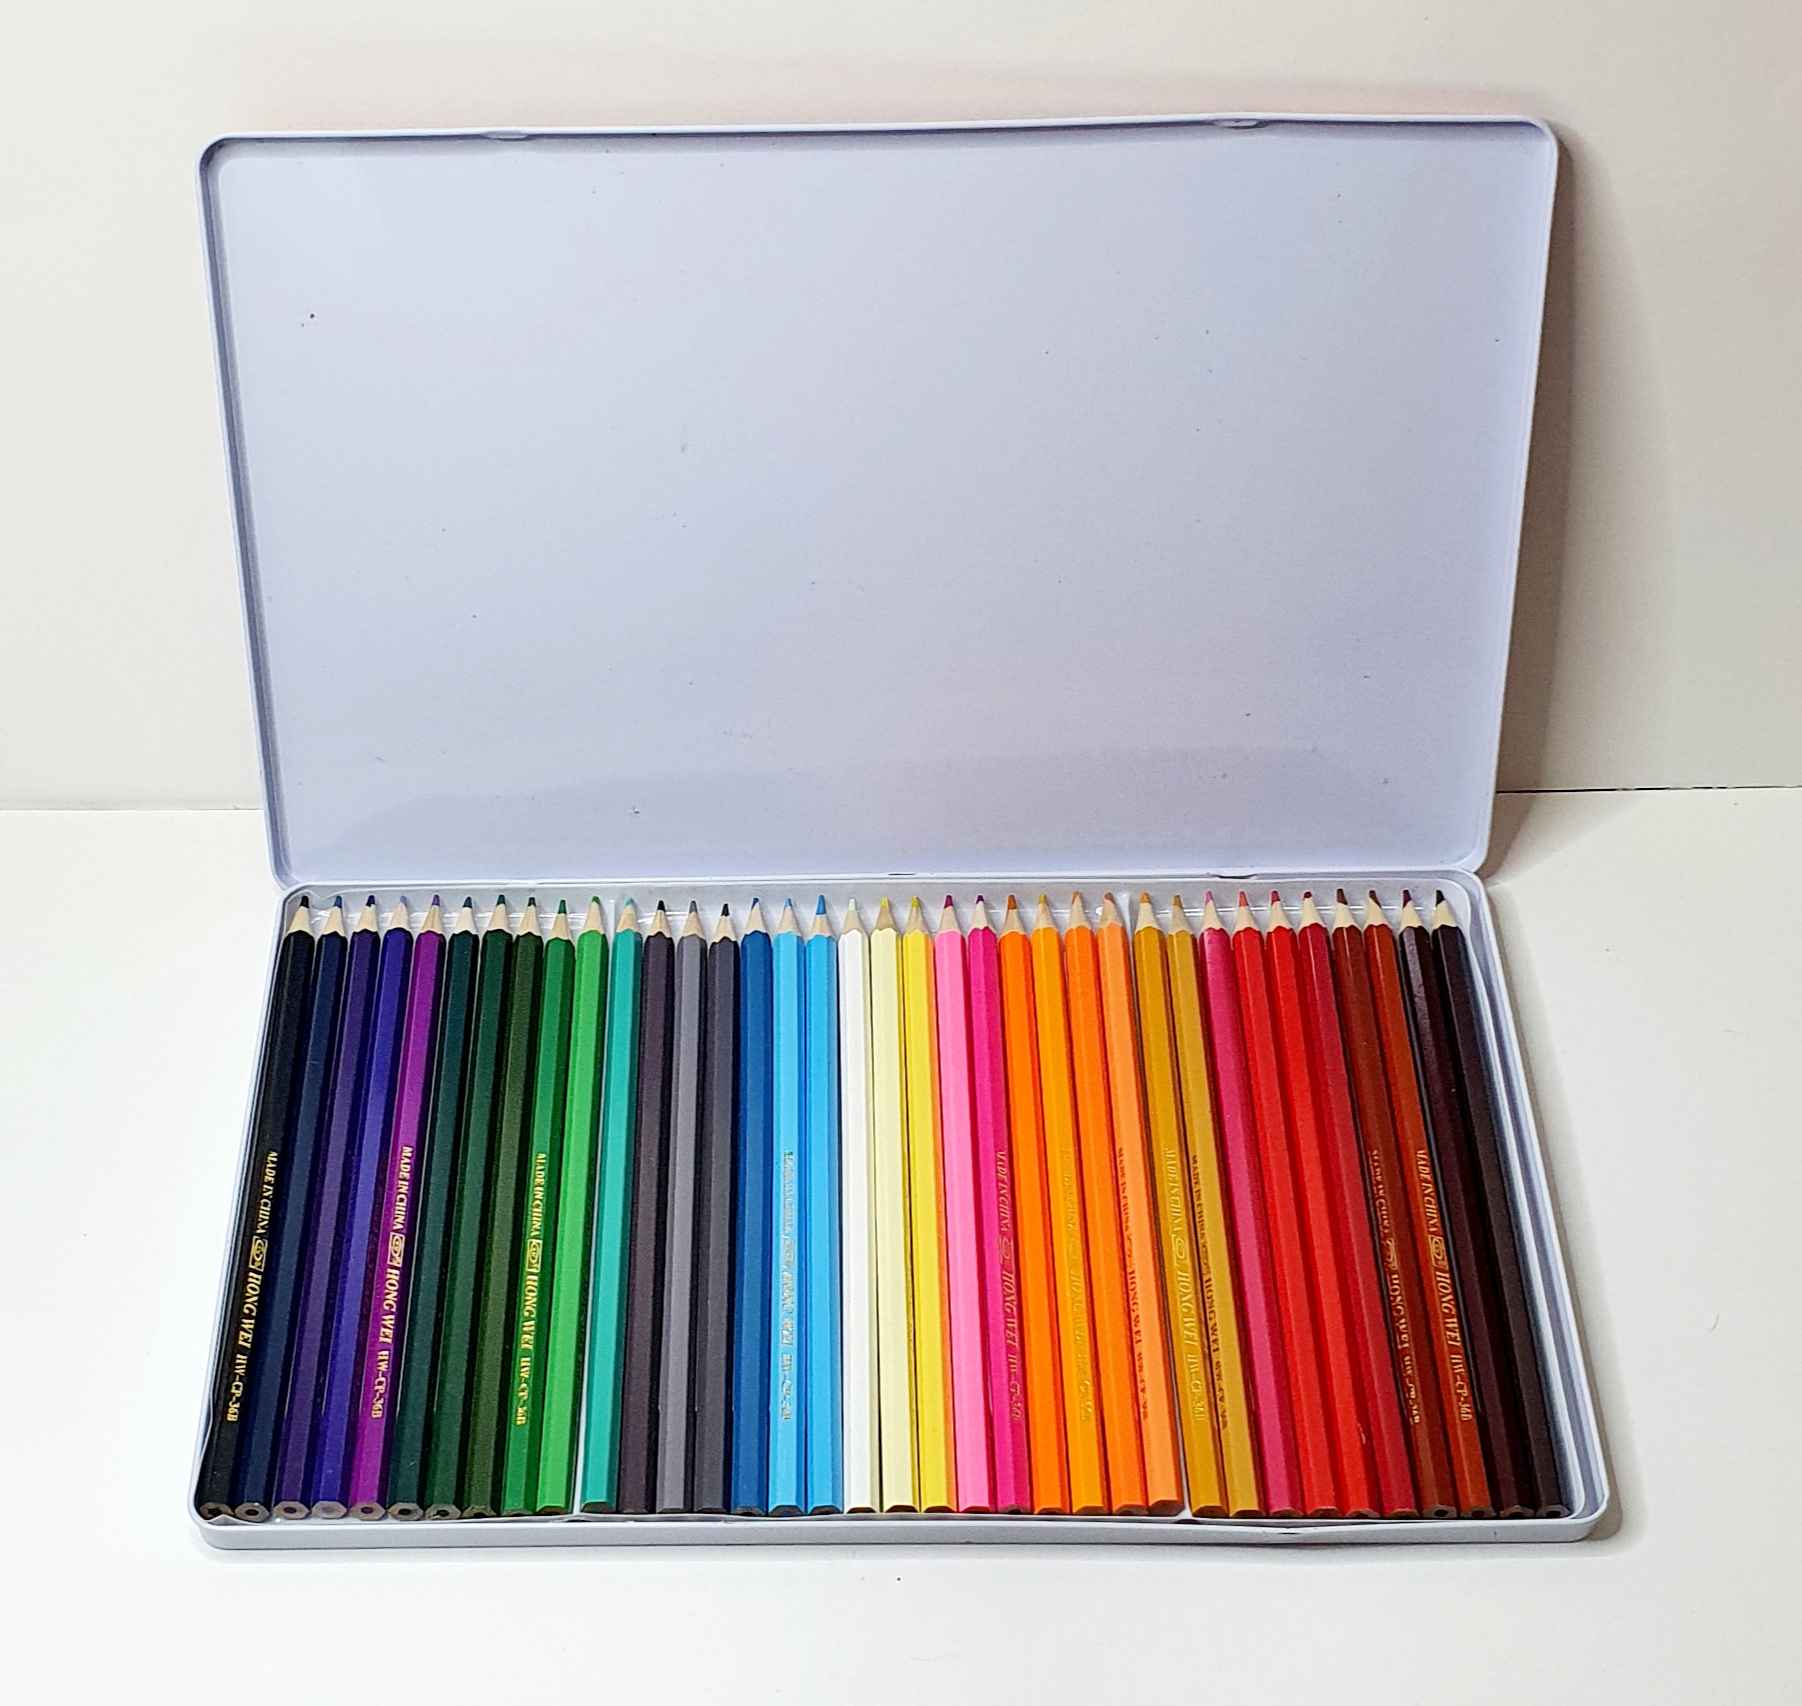 جعبه مداد رنگی ۳۶ تایی کد 4070